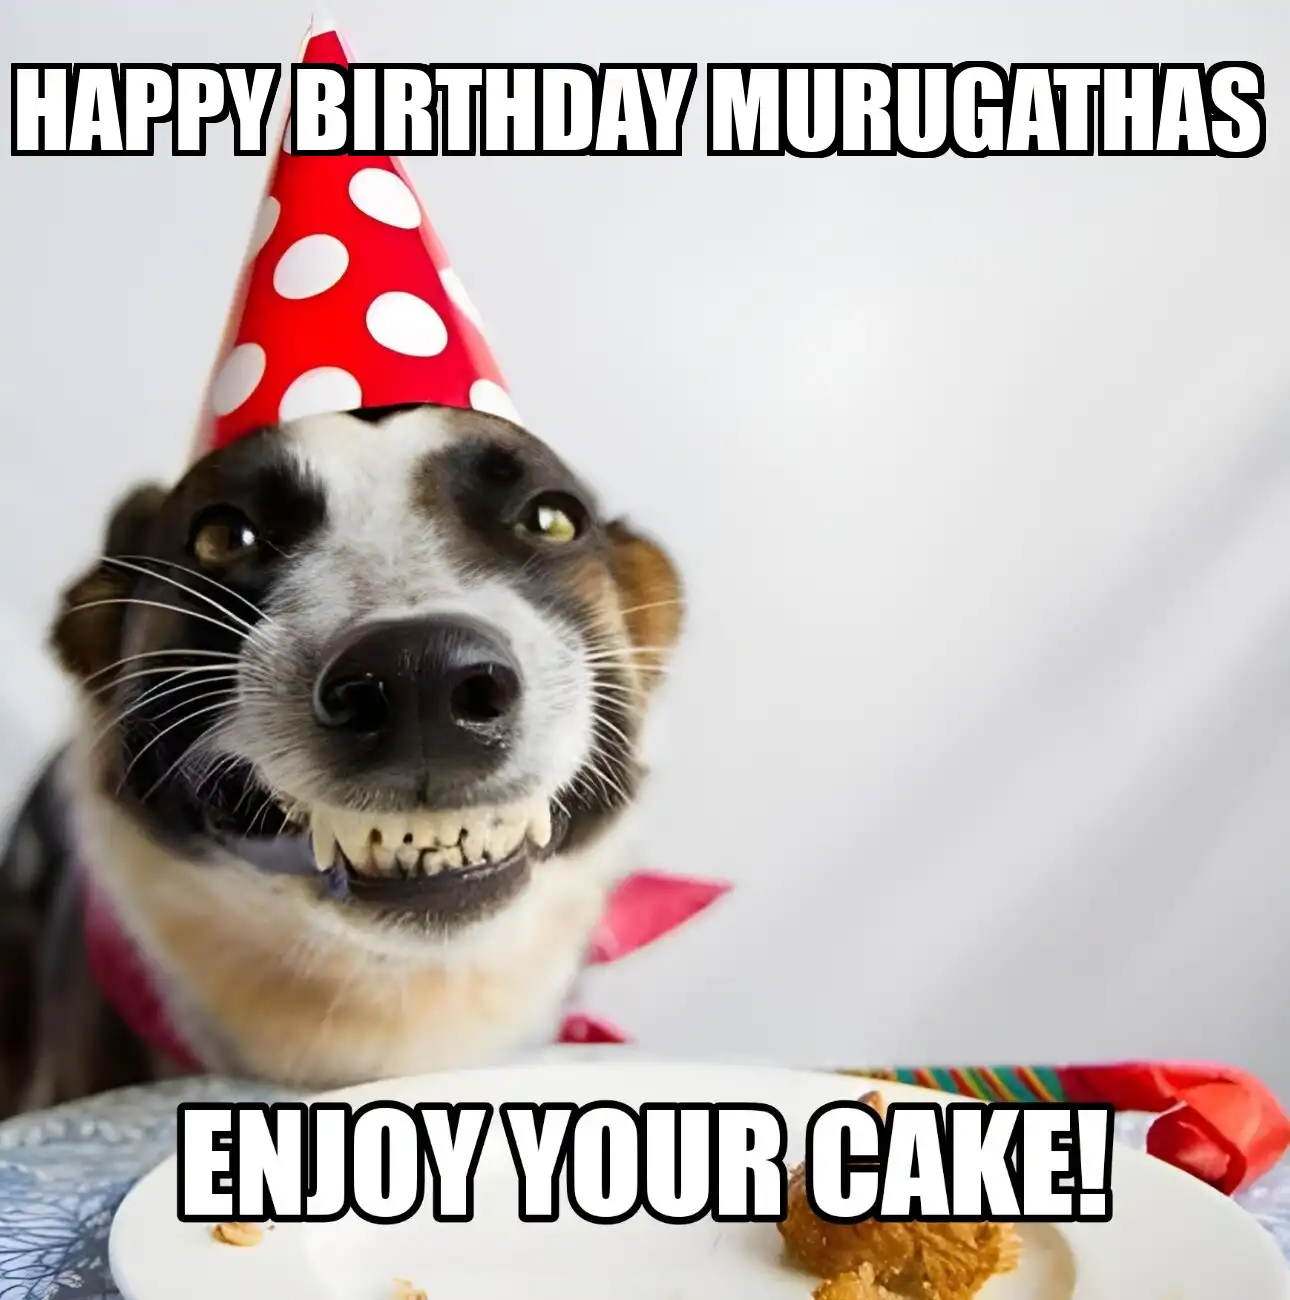 Happy Birthday Murugathas Enjoy Your Cake Dog Meme